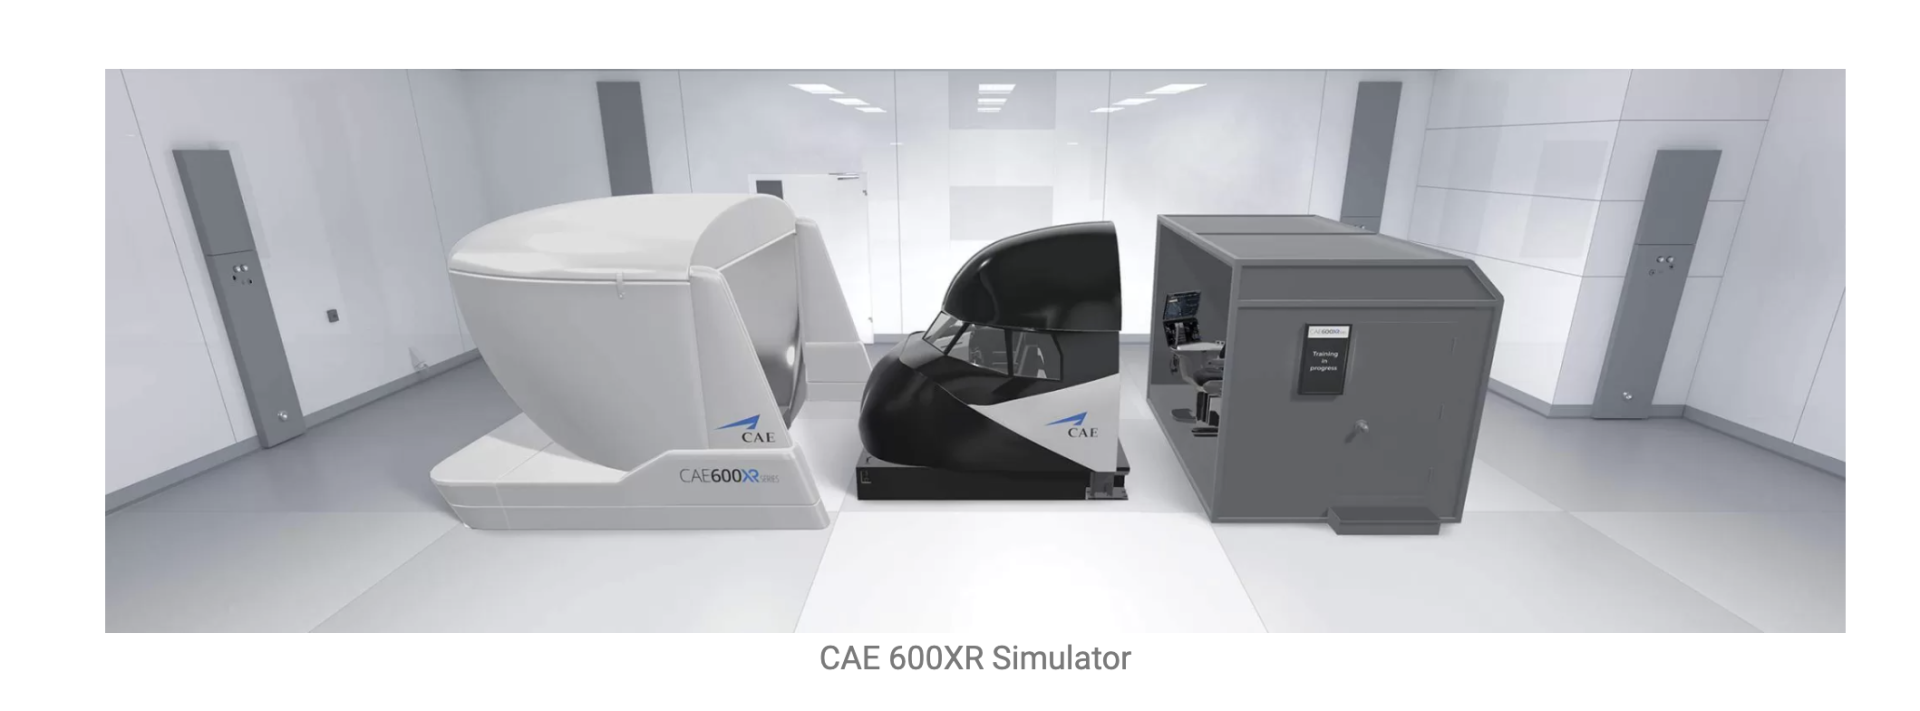 CAE_600XR_Simulator.png